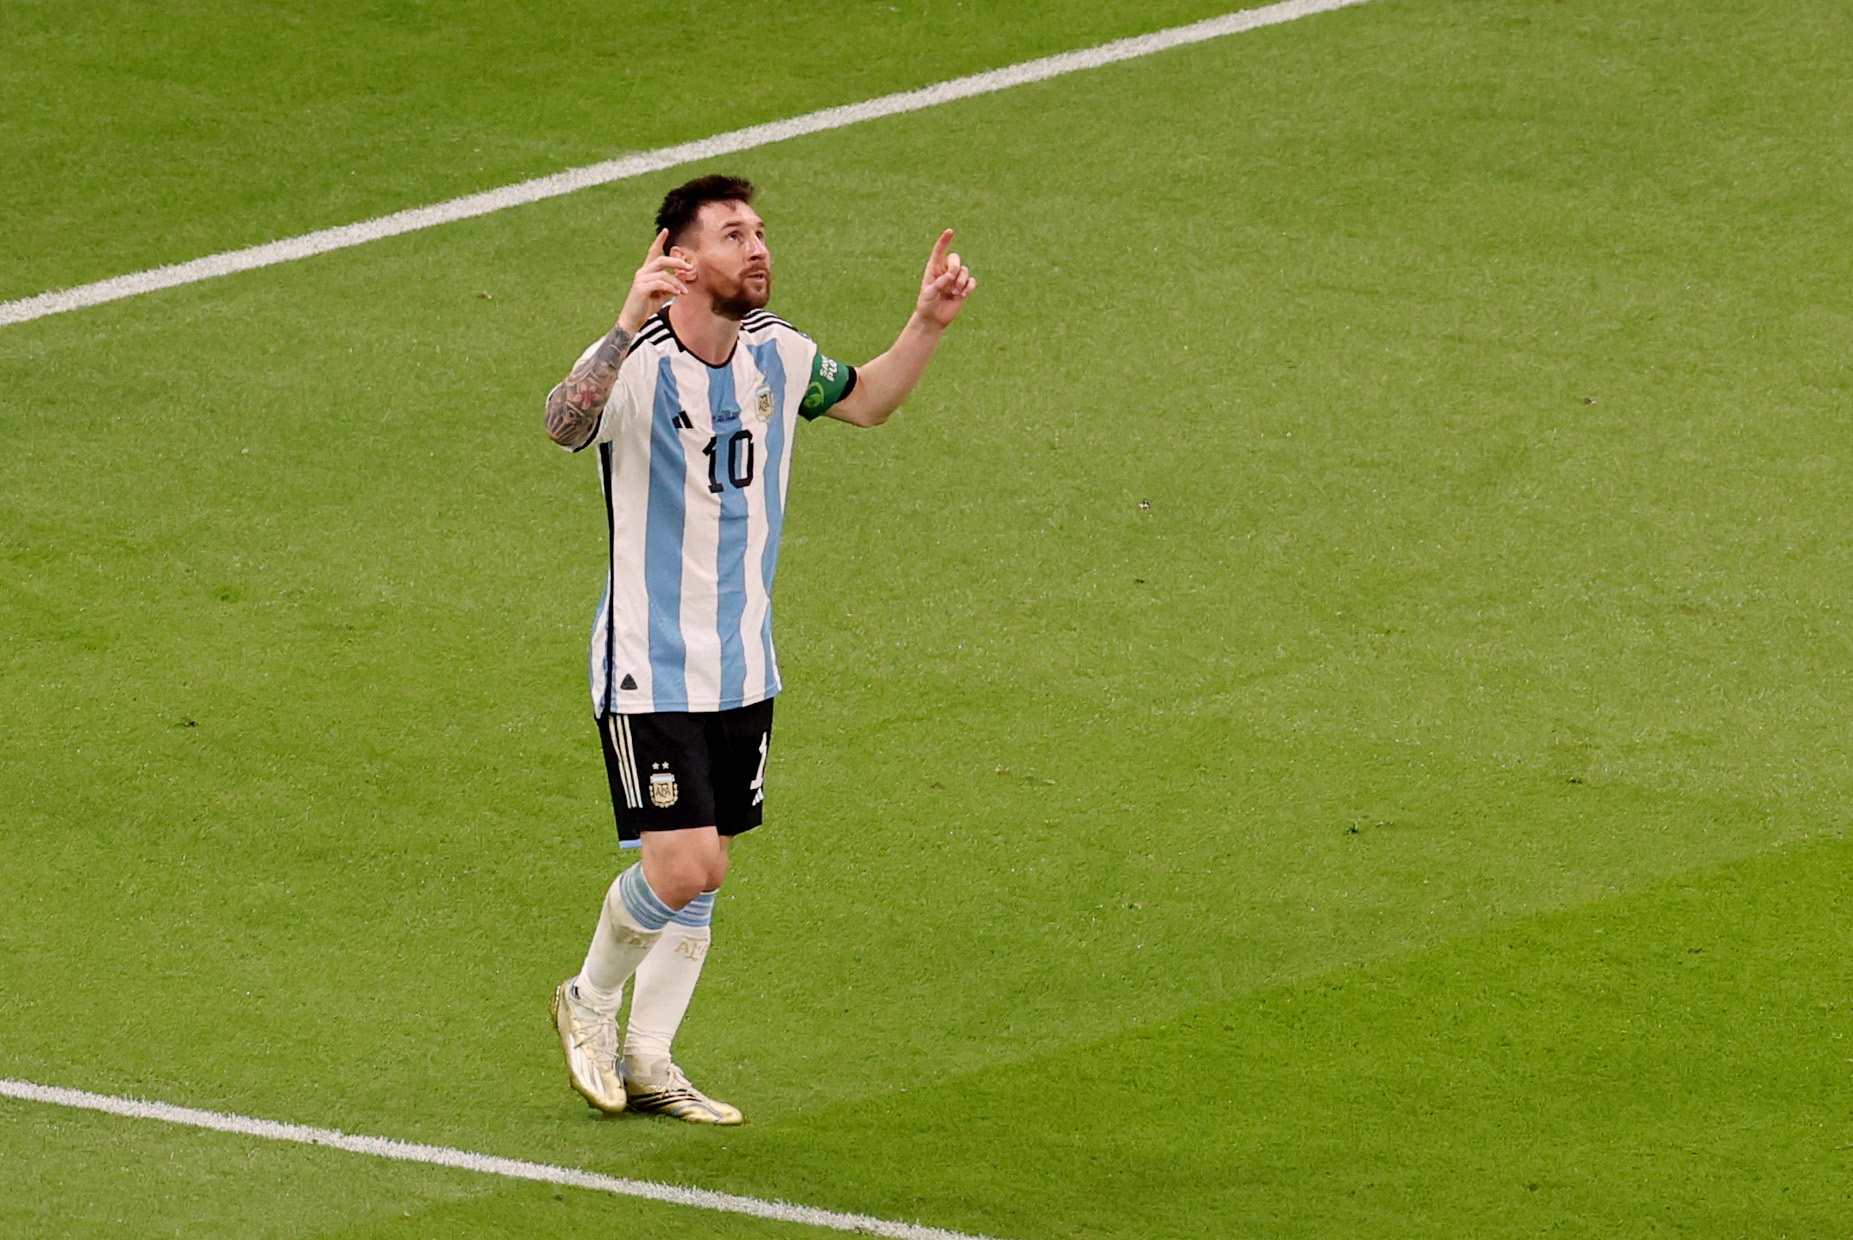 El clásico festejo de Messi tras su gran gol (Reuters/Molly Darlington)